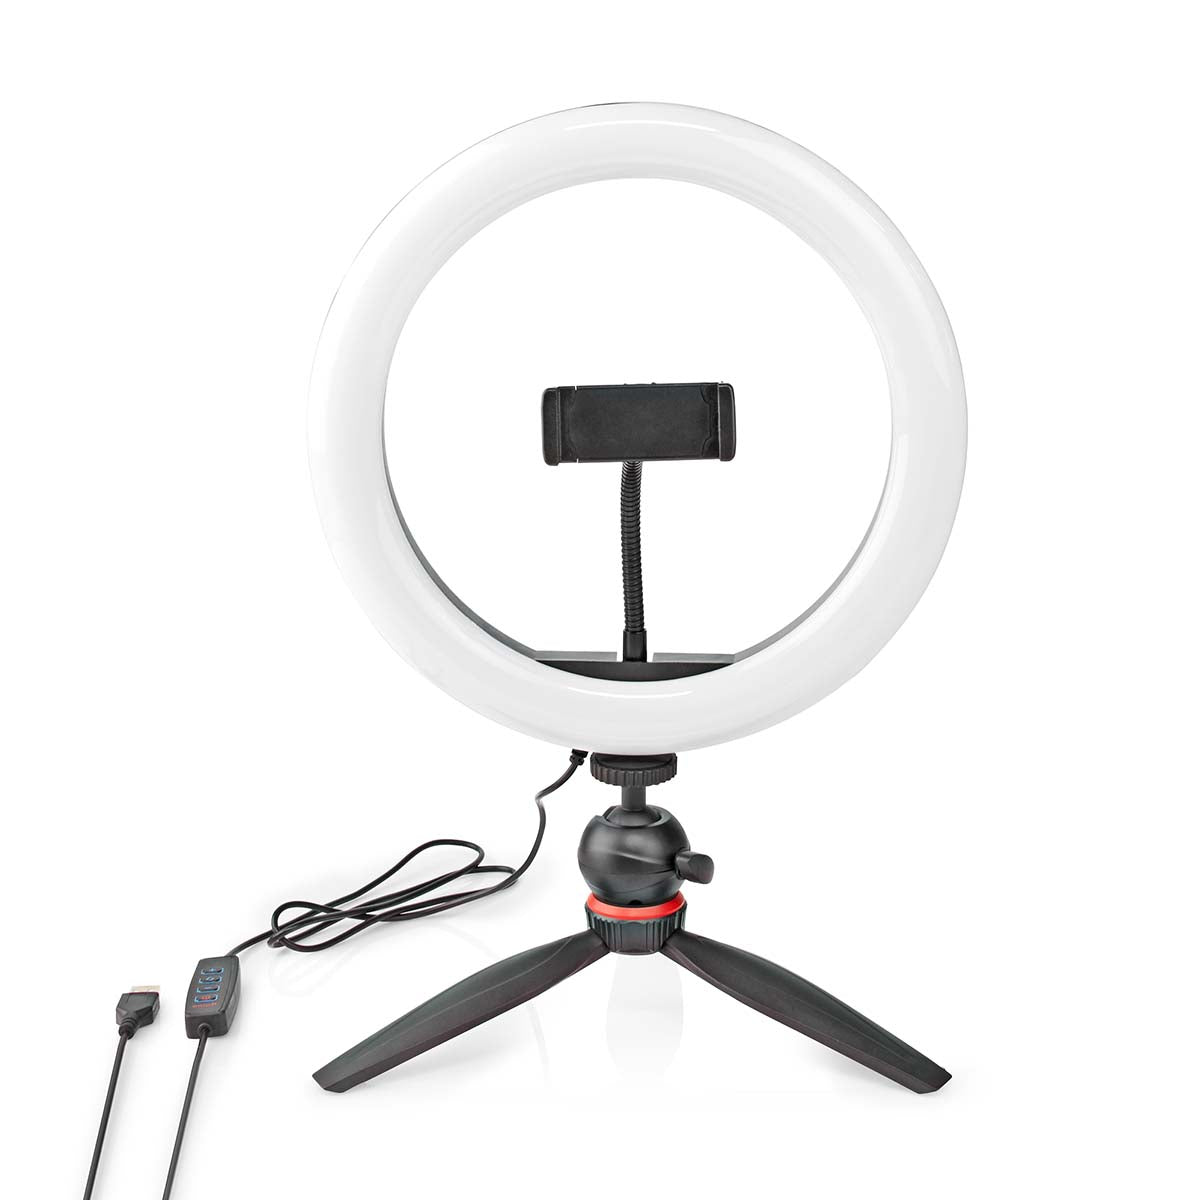 Ringlicht + Tischstativ LED Ringleuchte Fotolicht Studiolicht Lampe Selfie Handy